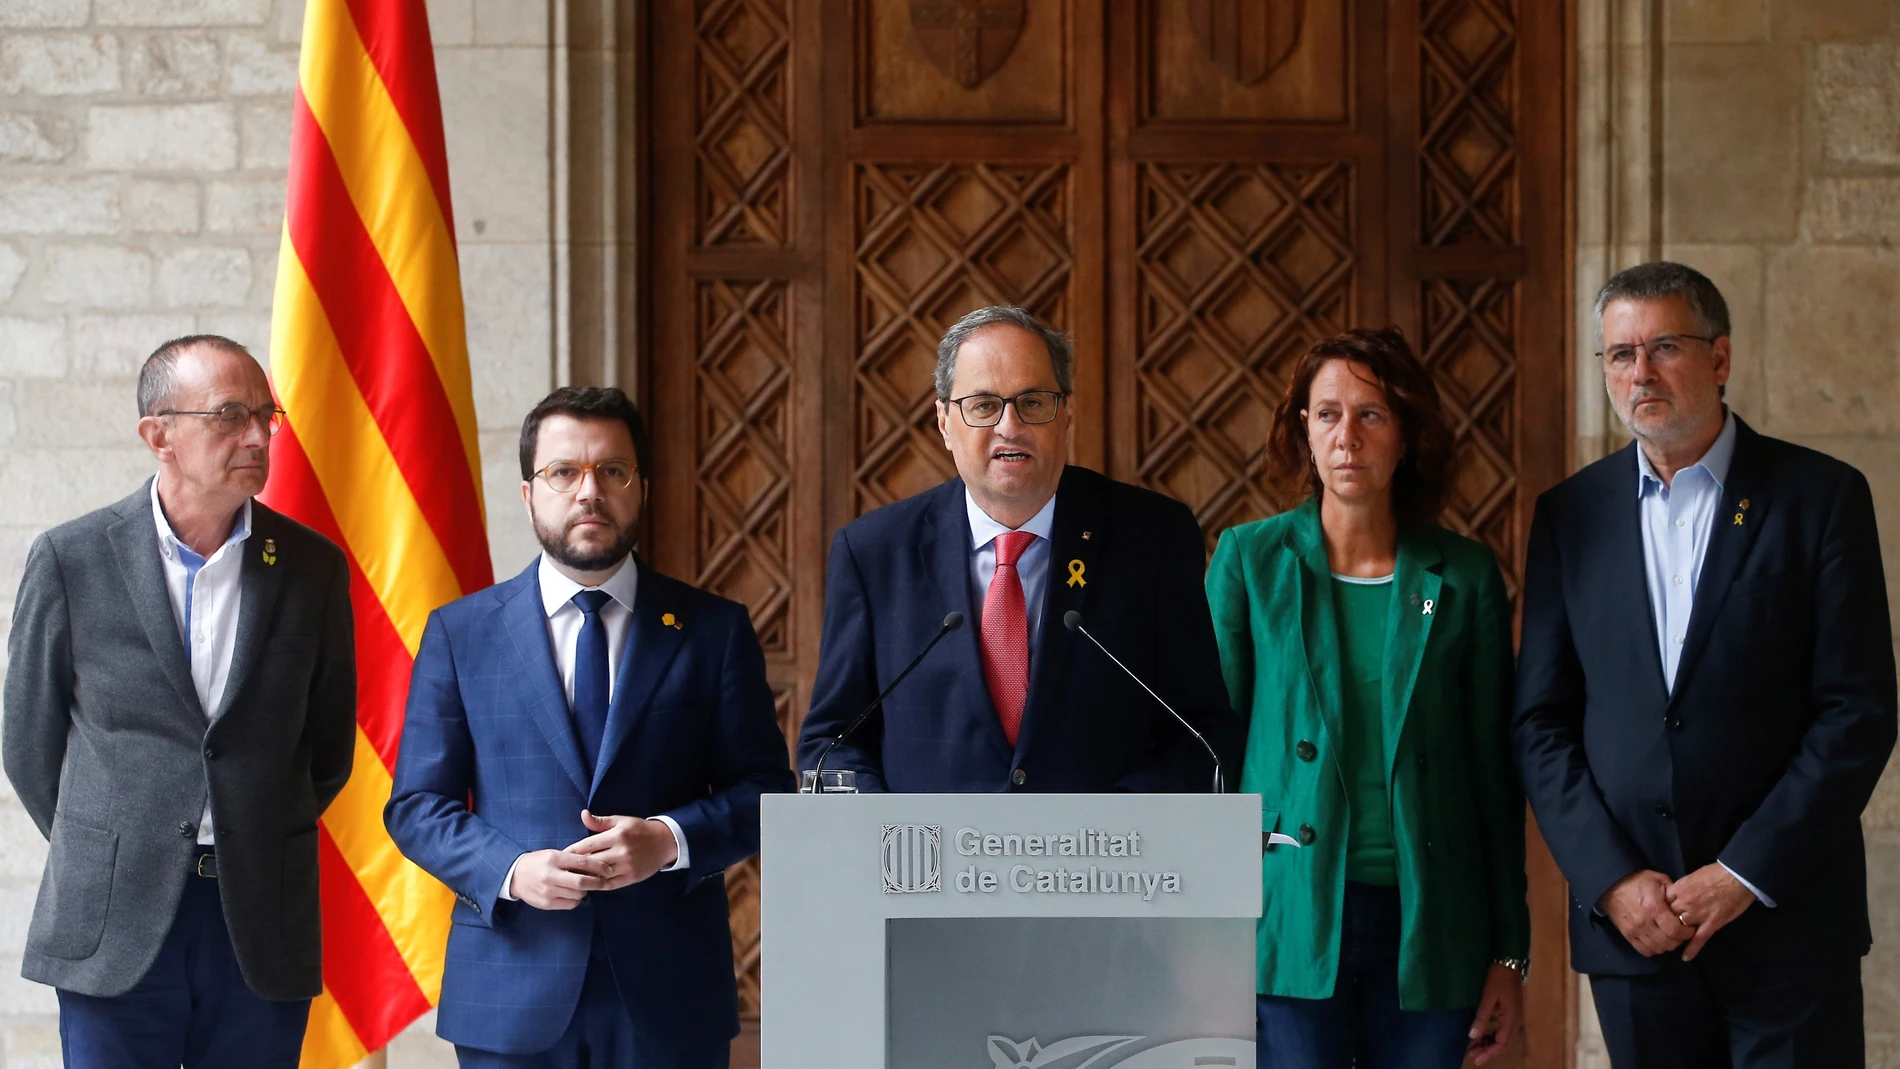 El presidente de la Generalitat, Quim Torra, junto a su vicepresidente